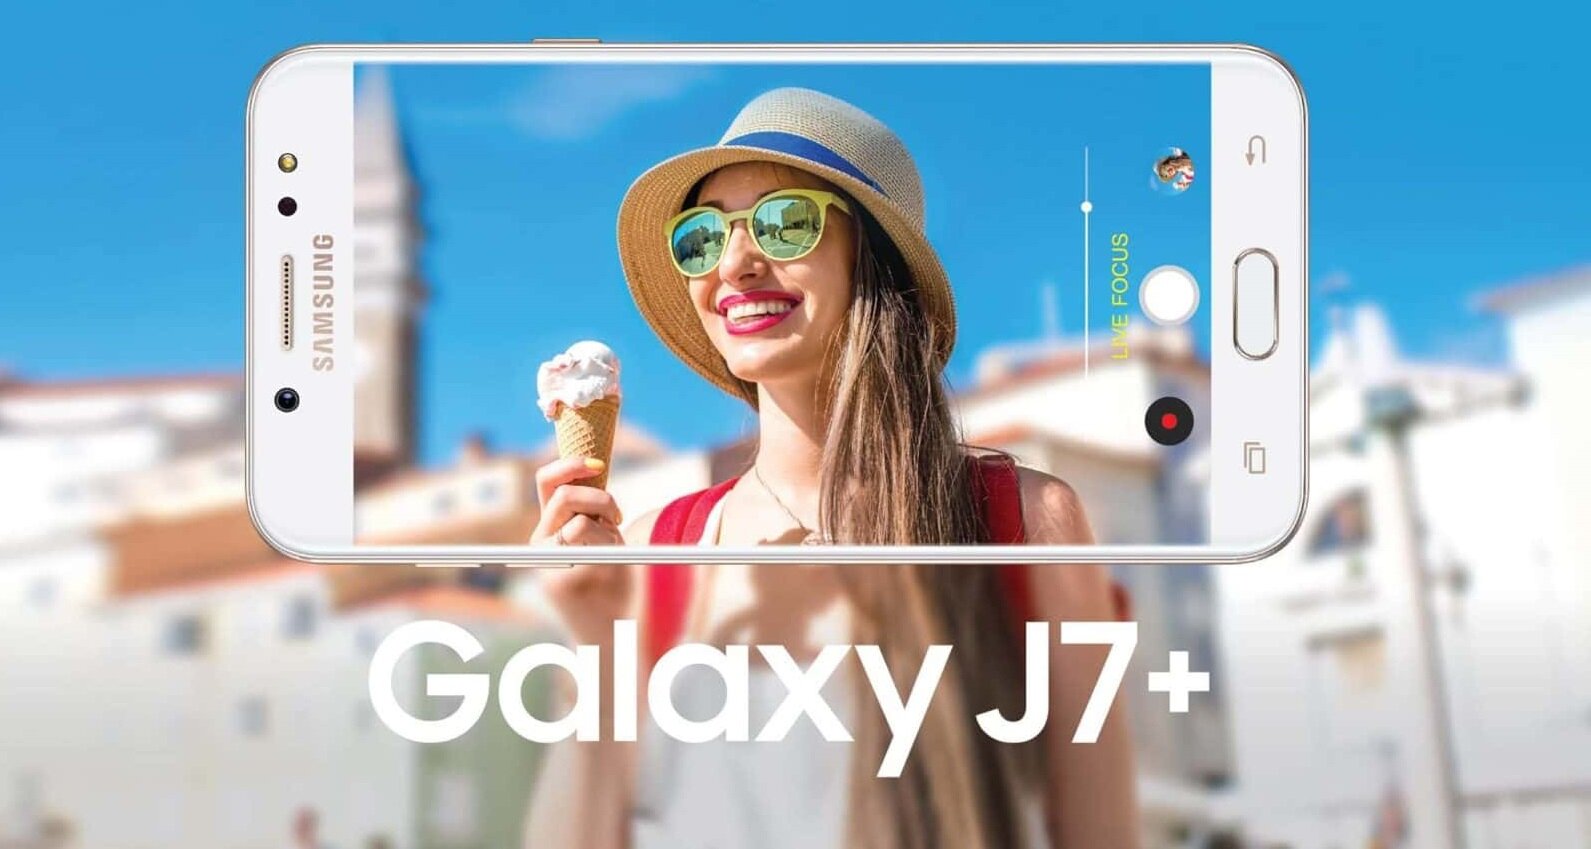 Đánh giá Samsung J7+ có tốt không chi tiết? 10 lý do nên mua ...